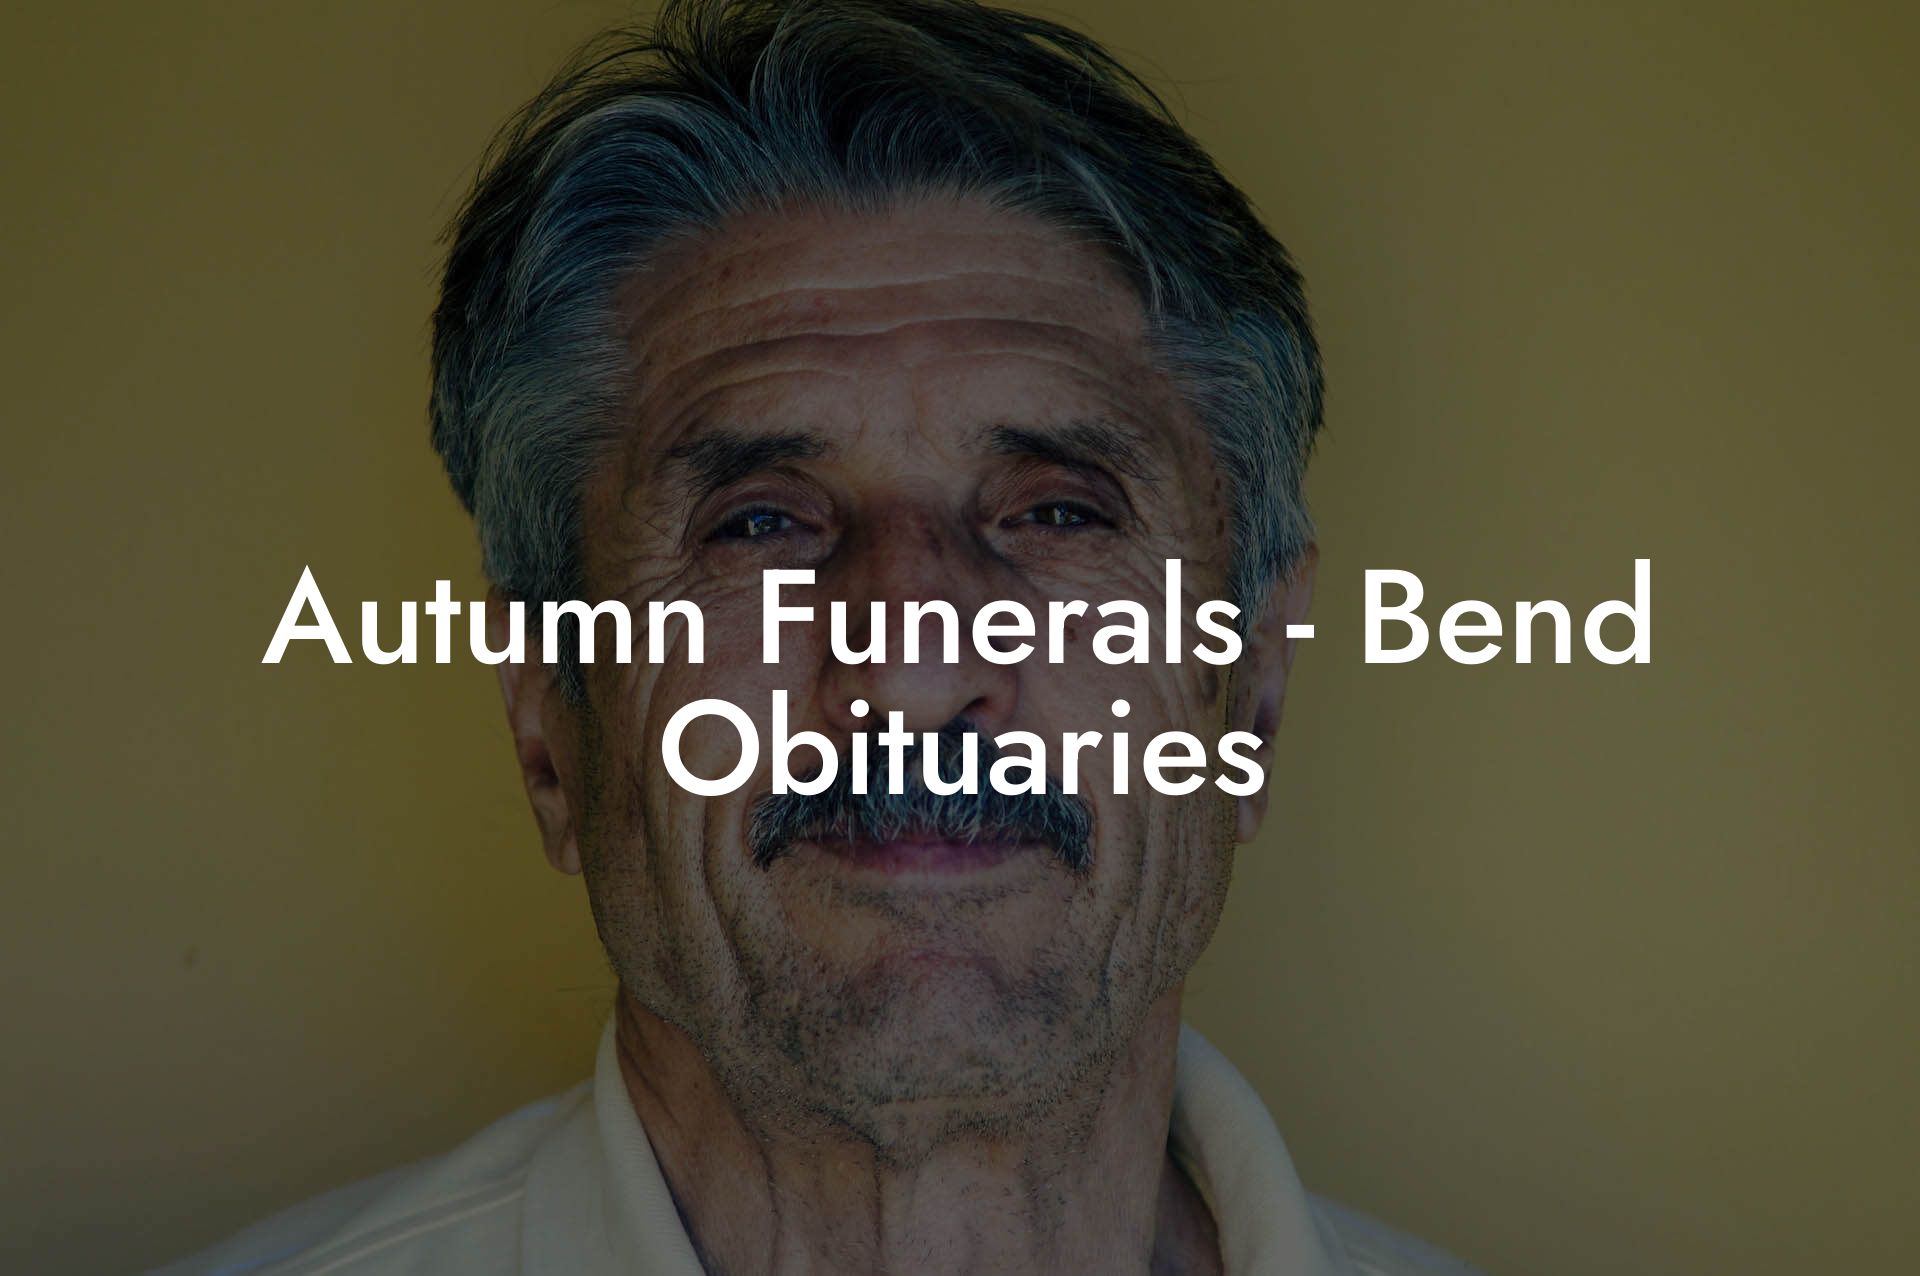 Autumn Funerals - Bend Obituaries